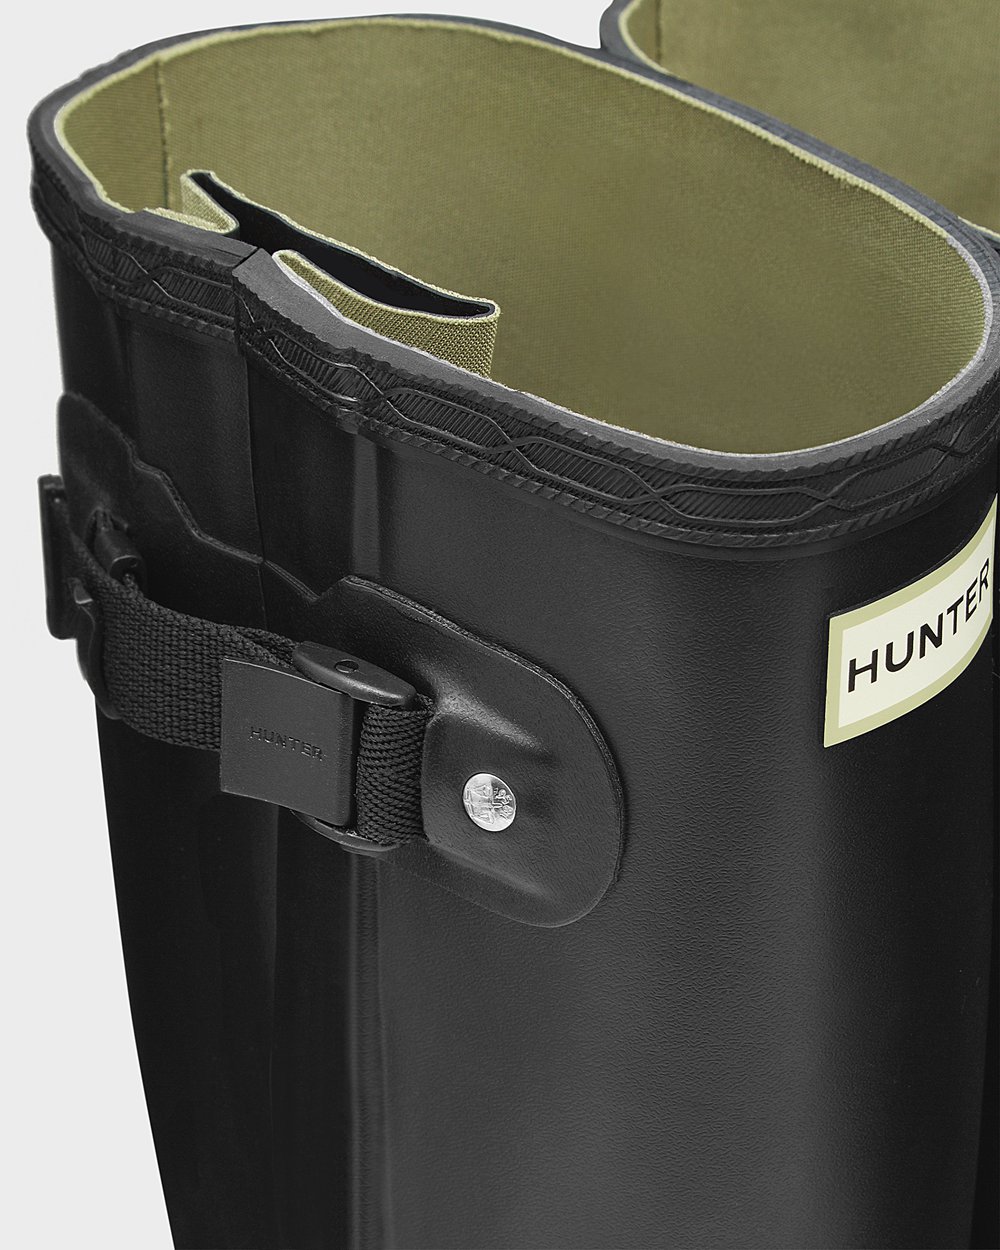 Mens Tall Rain Boots - Hunter Norris Field Side Adjustable (23IPJZSGT) - Black